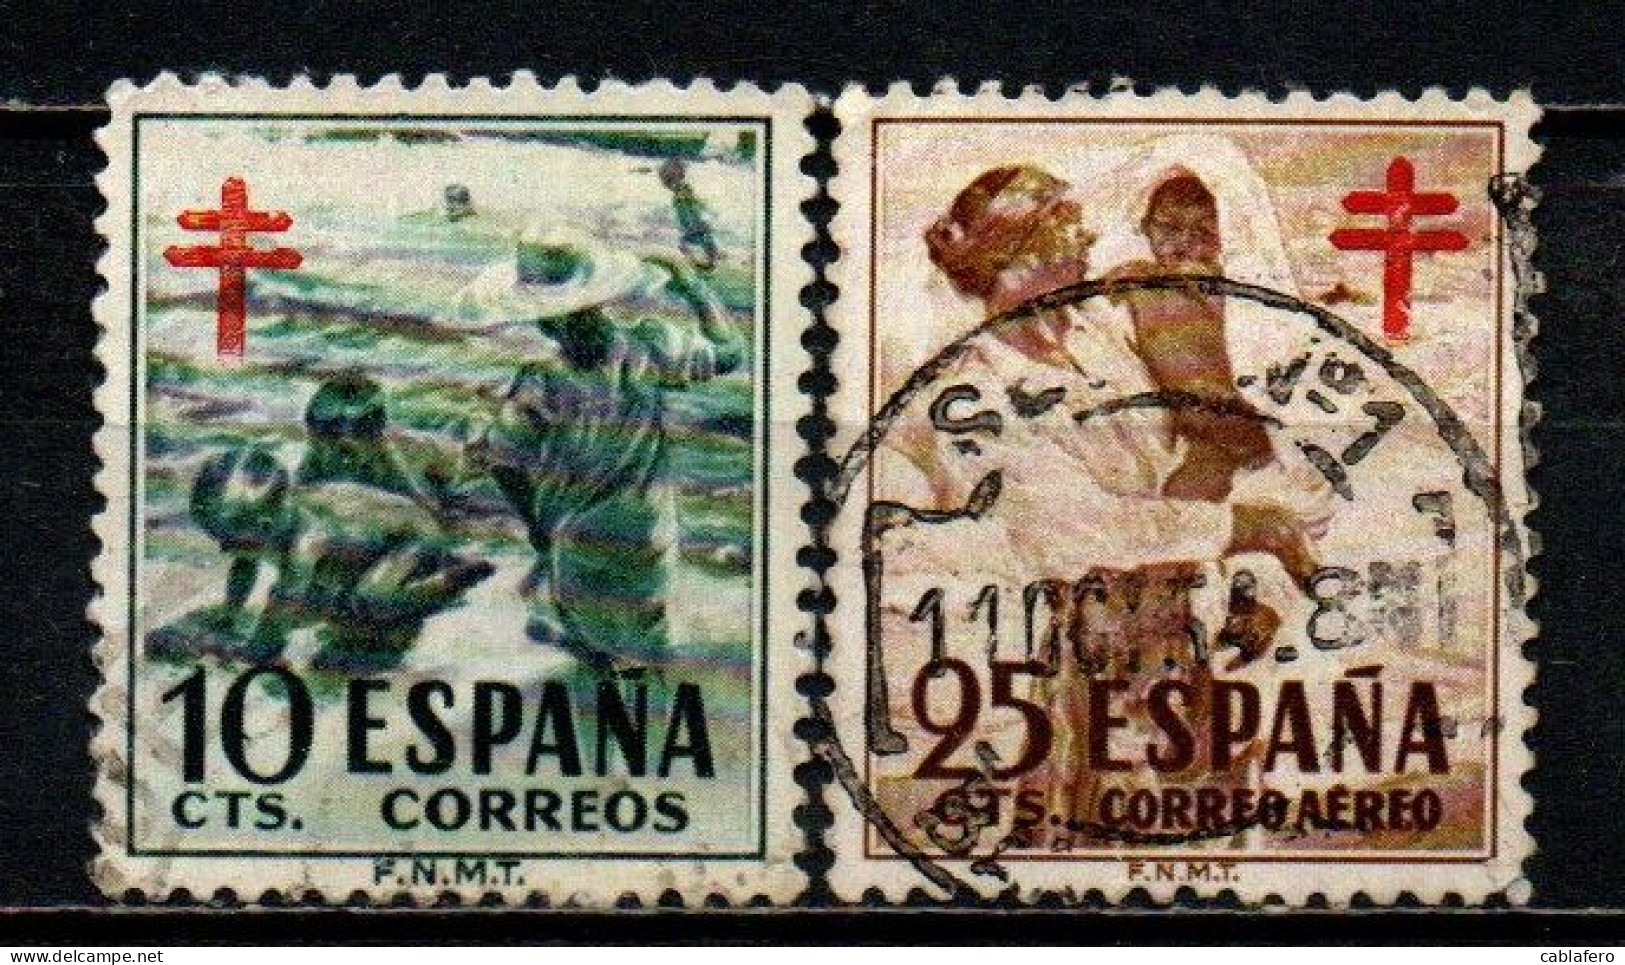 SPAGNA - 1951 - BAMBINI SULLA SPIAGGIA E MADRE CON FIGLIO - PRO TUBERCOLOTICI - CROCE DI LORENA IN ROSSO - USATI - Used Stamps